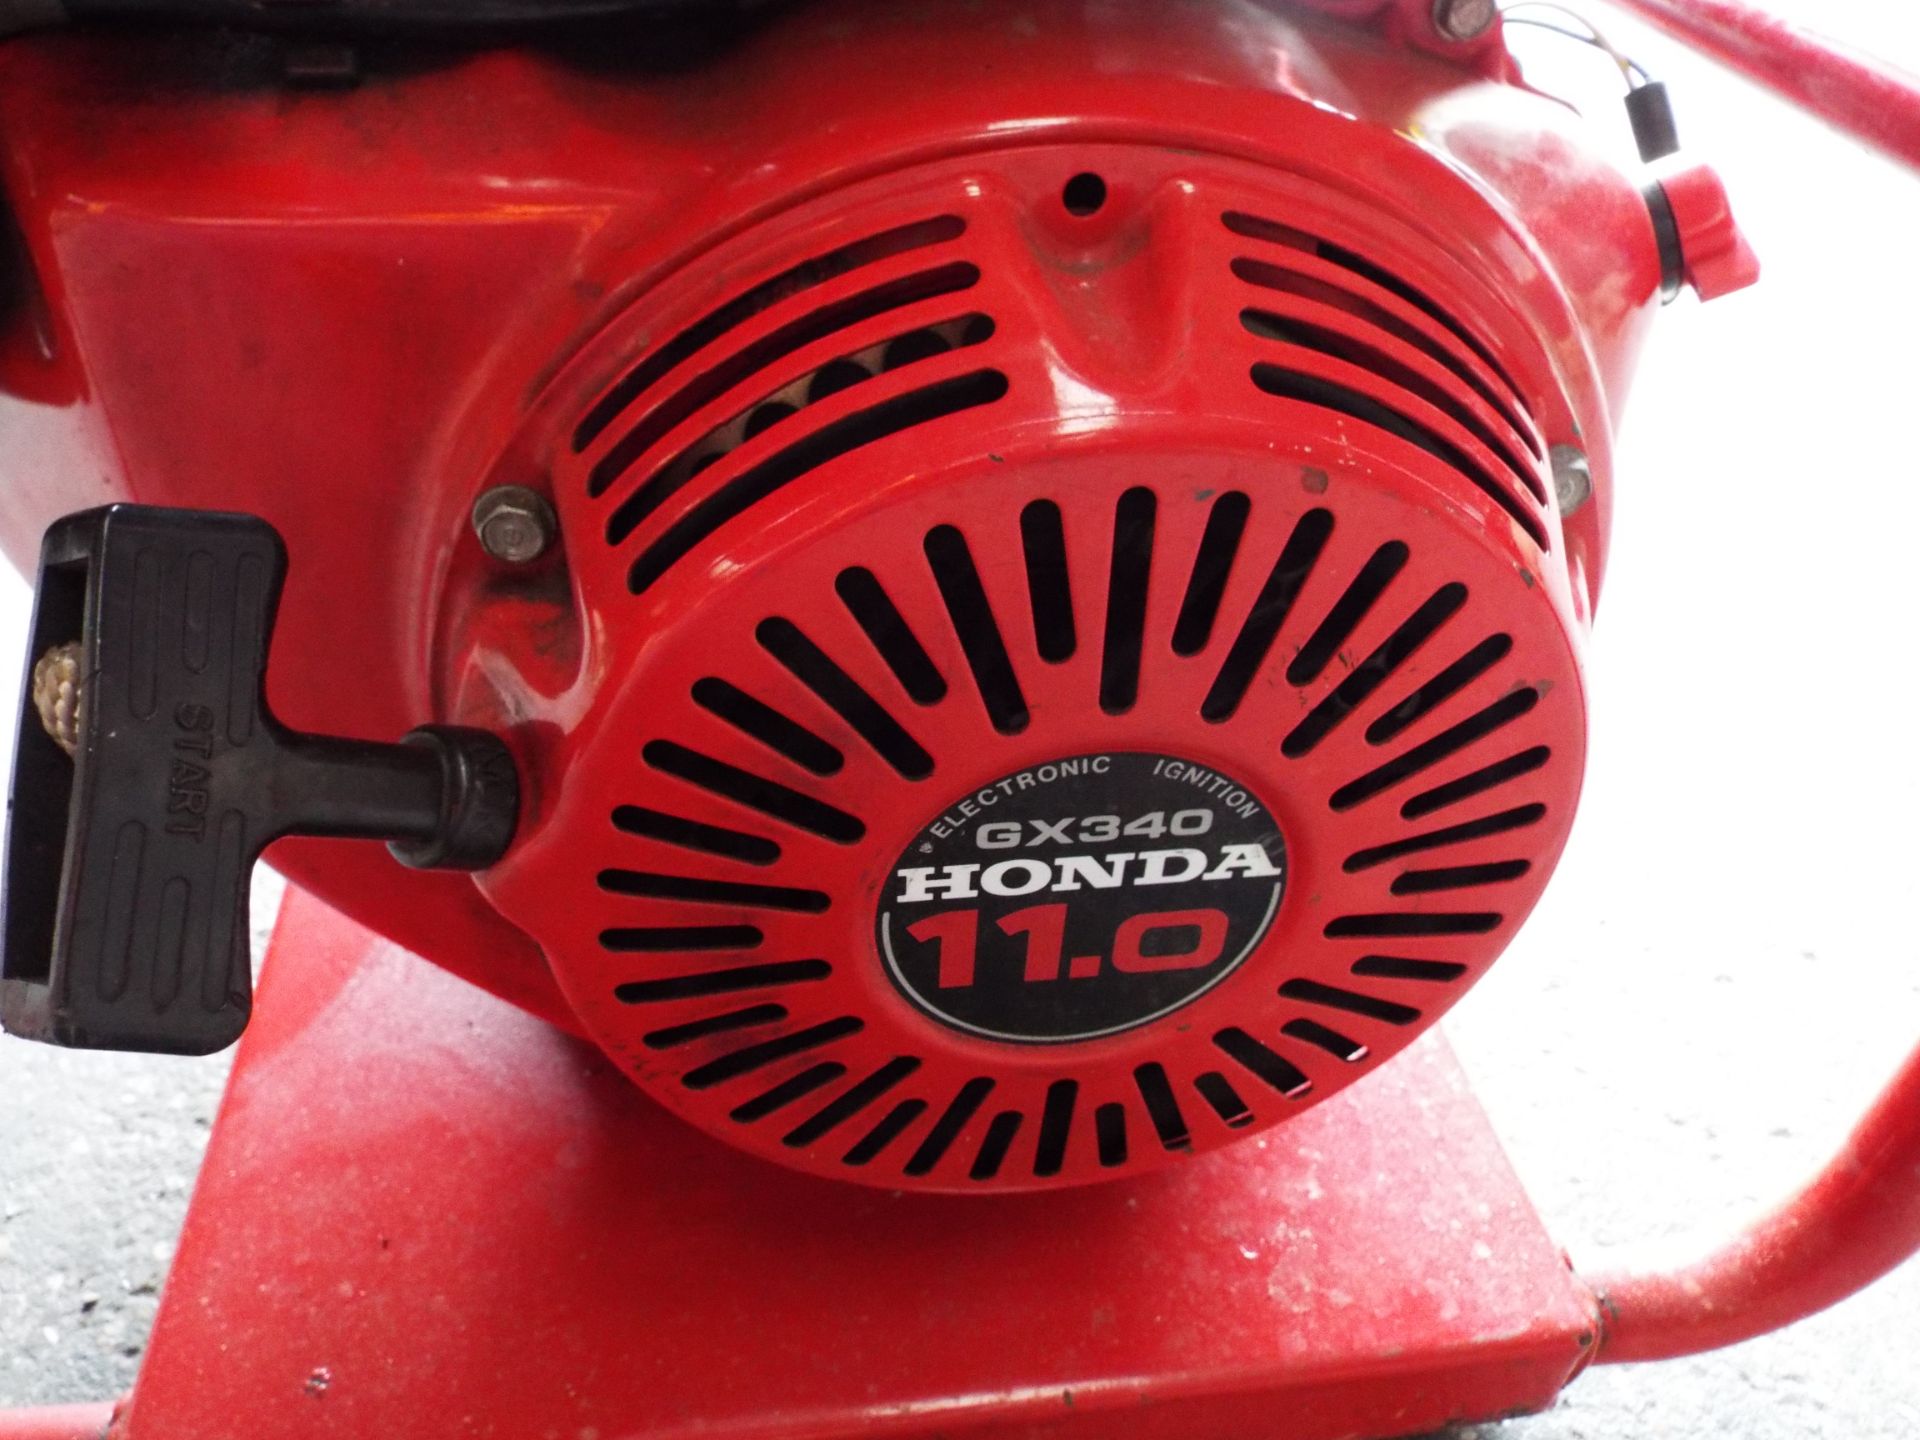 Honda GX340 Powered Petrol Generator - Image 9 of 9